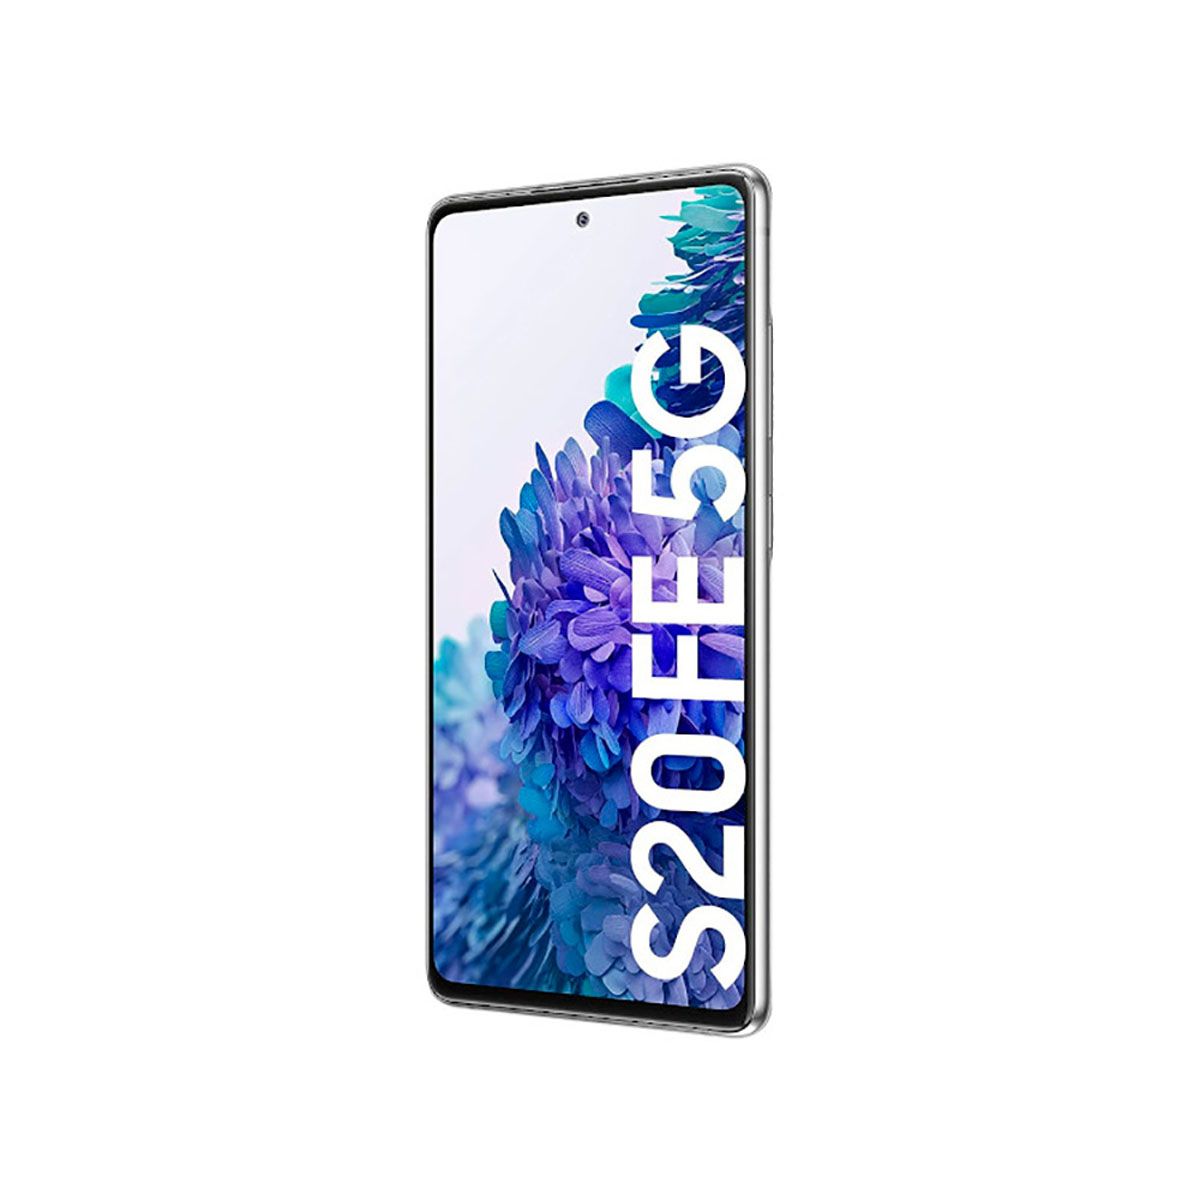 Samsung Galaxy S20 FE 5G 6Go/128Go Blanc (Blanc Nuage) Double SIM G781